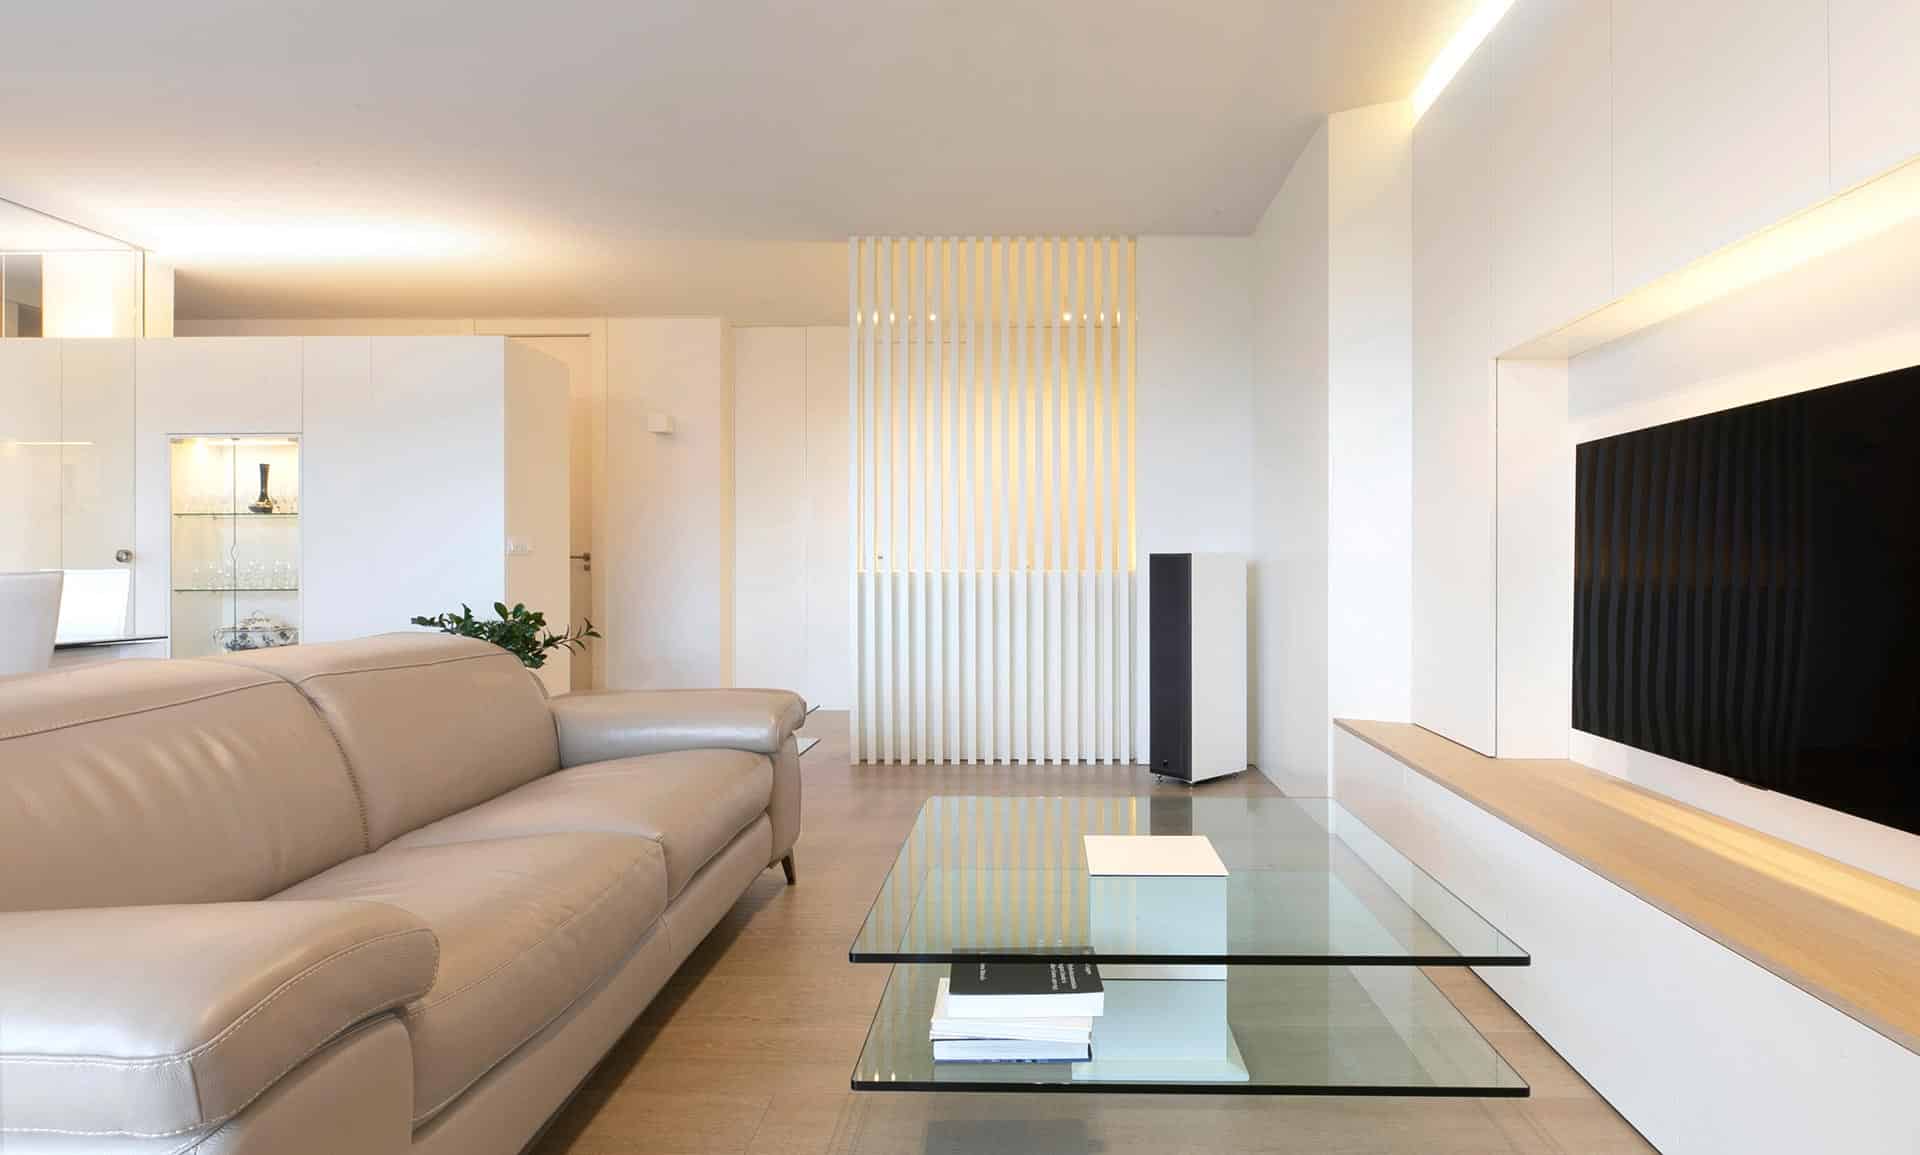 Reforma de casa en Santander minimalista blanco diseñada por Moah Arquitectos en Cantabria